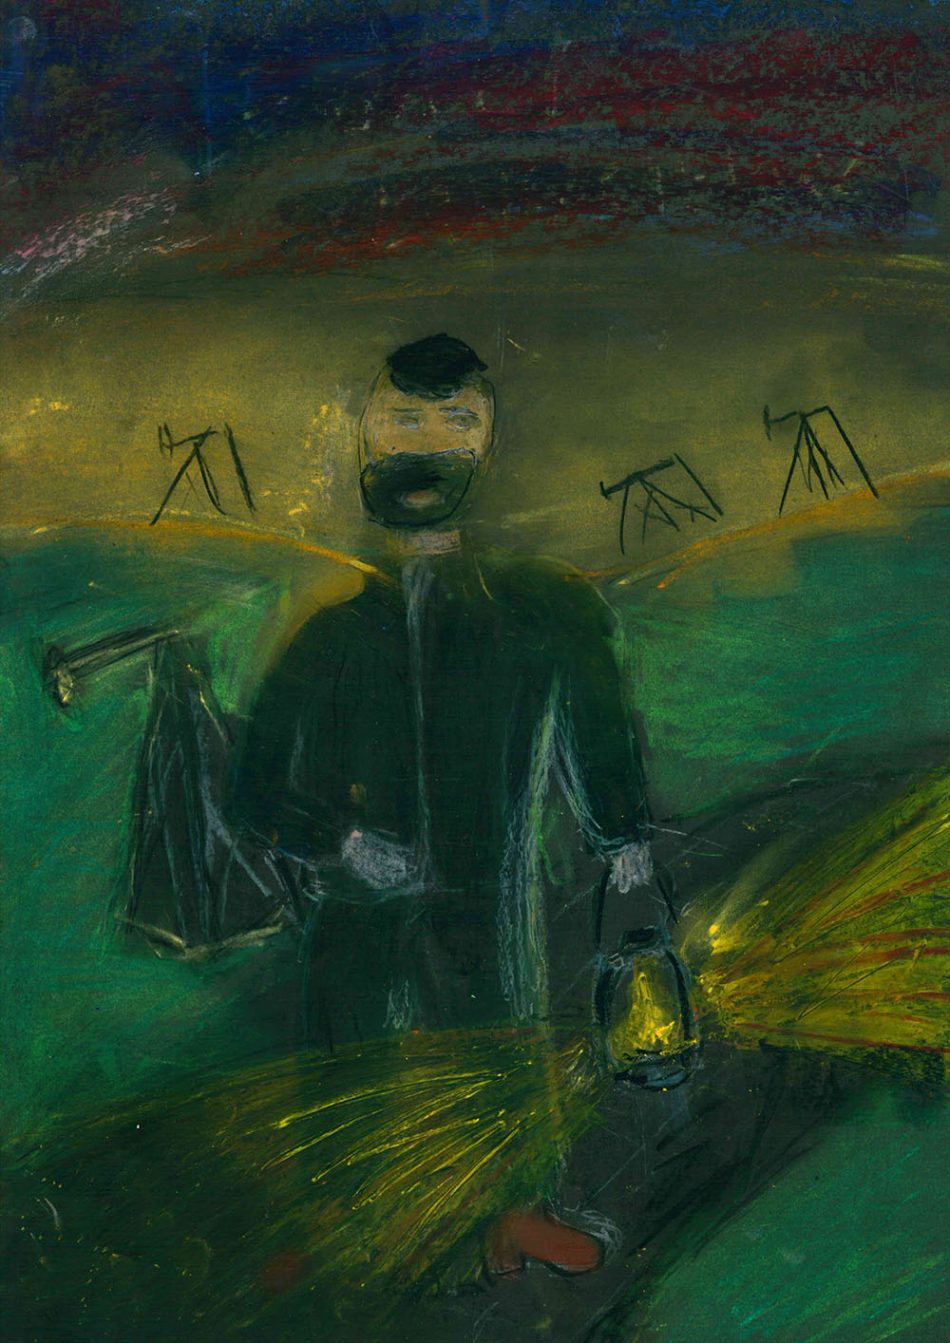 Rysunek namalowany pastelami przez 12-letniego chłopca. Przedstawia mężczyznę z brodą niosącego lampę naftową, rozświetlającą wieczór. W tle kiwony i wzgórza.